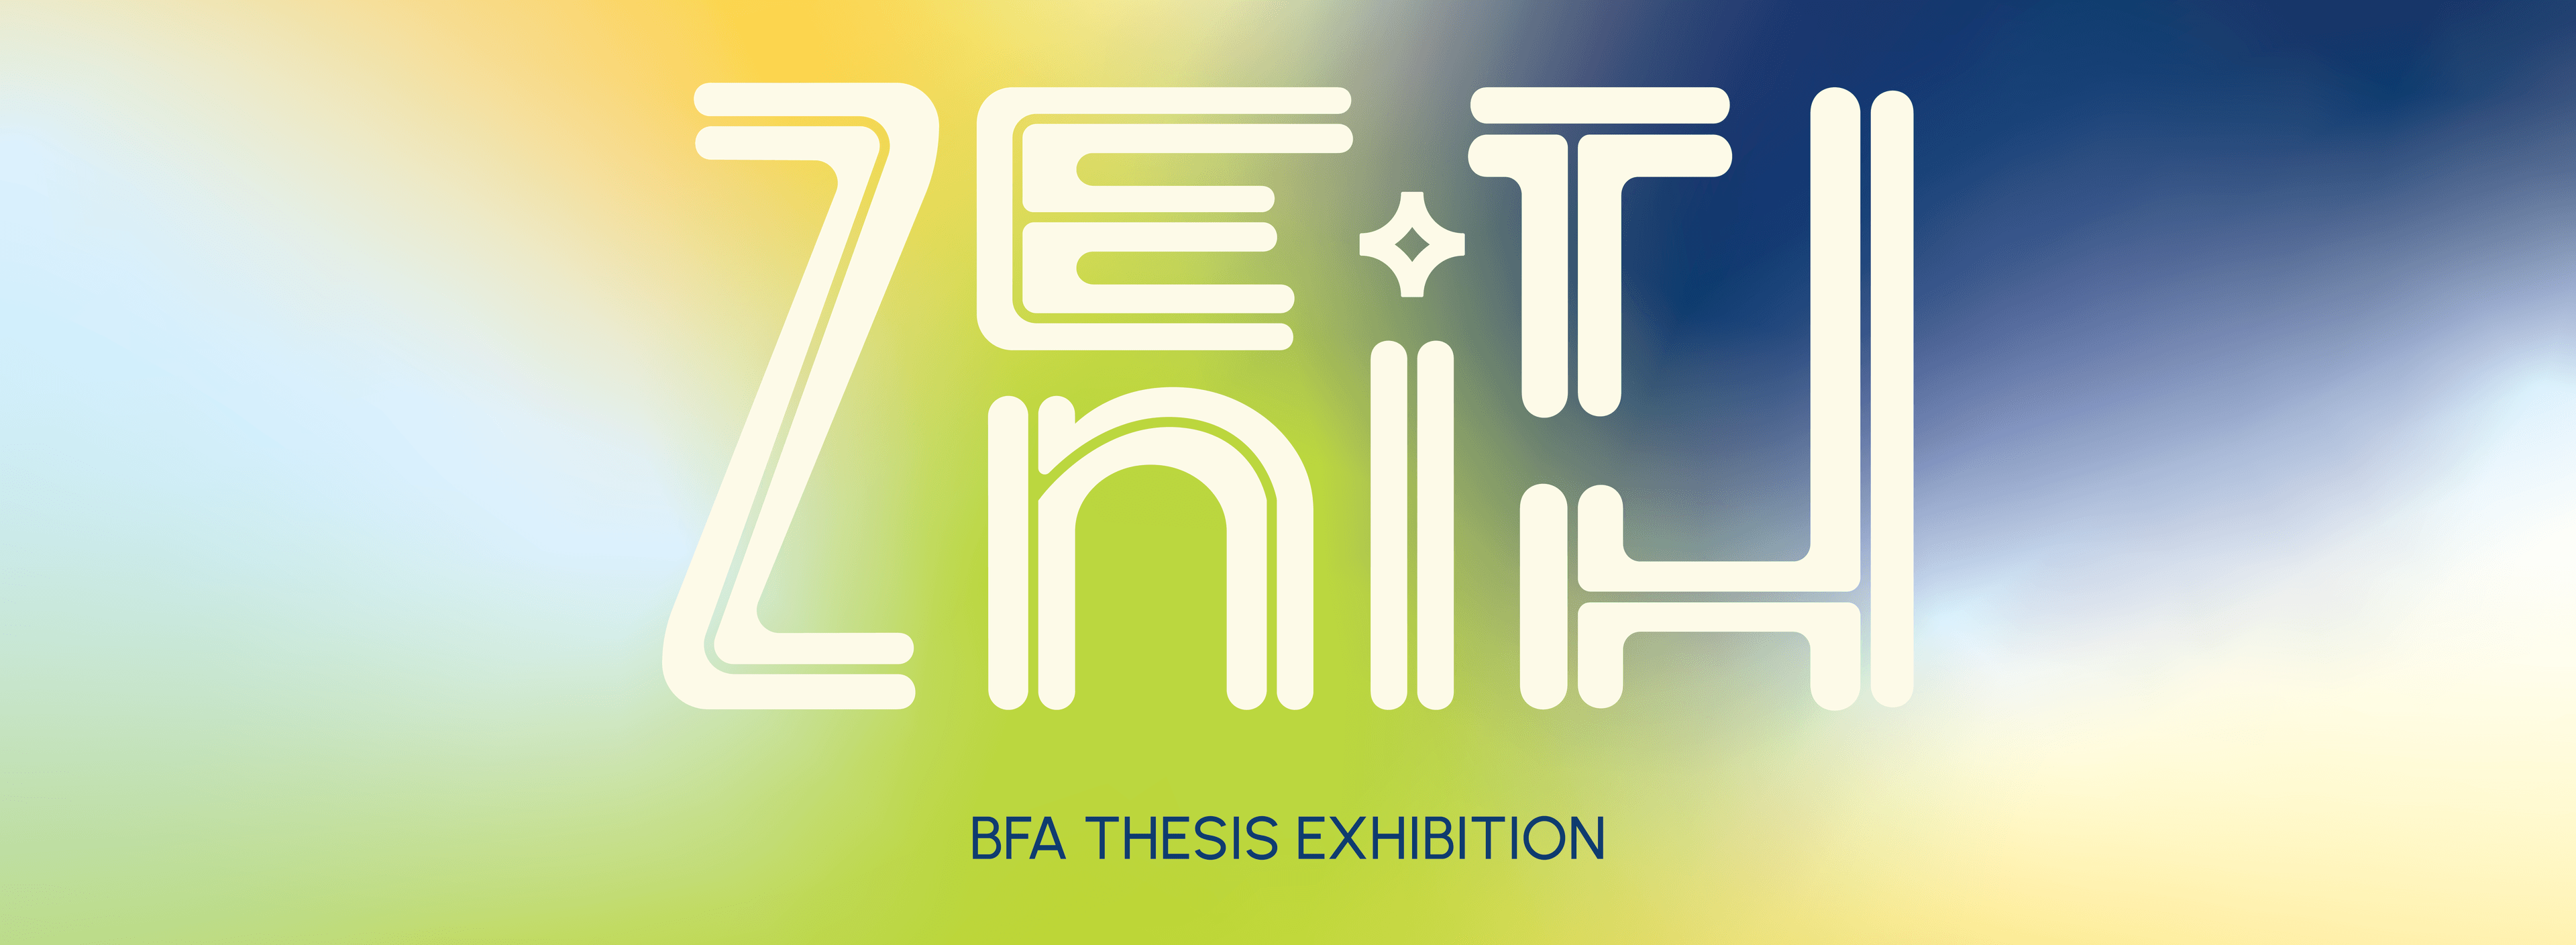 Zenith: BFA Thesis Exhibition